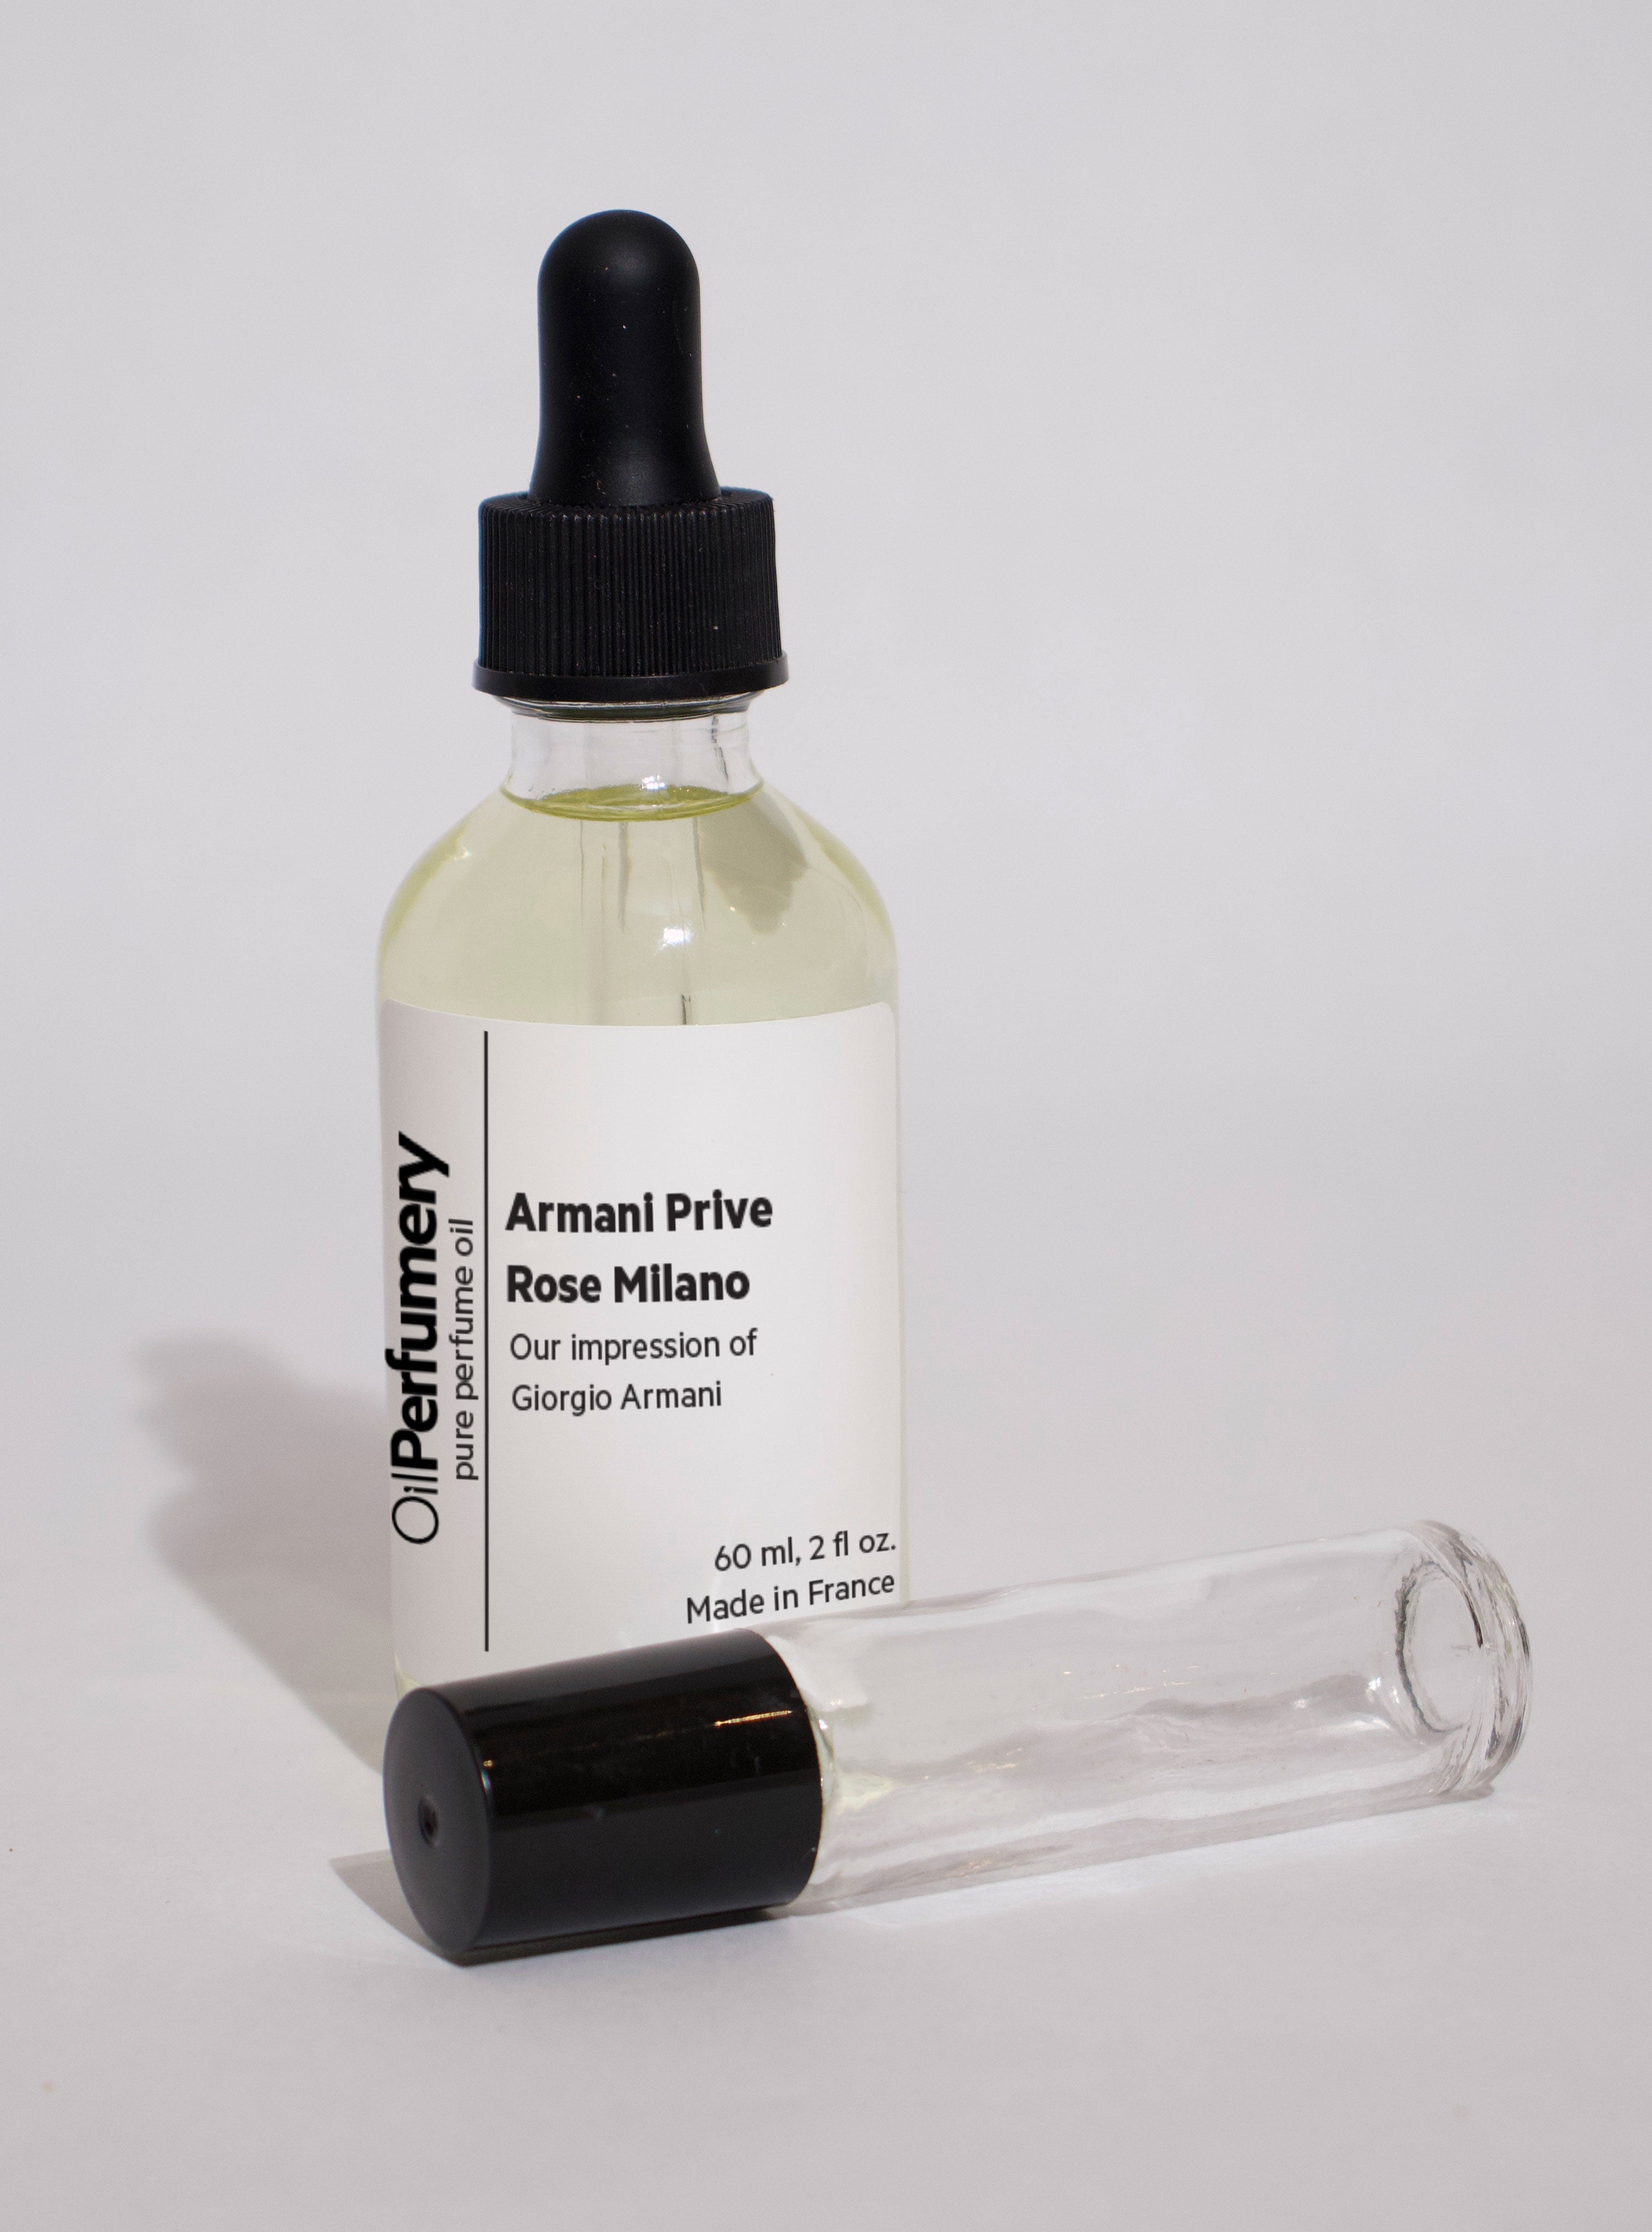 Giorgio Armani - Armani Prive Rose Milano - Oil Perfumery